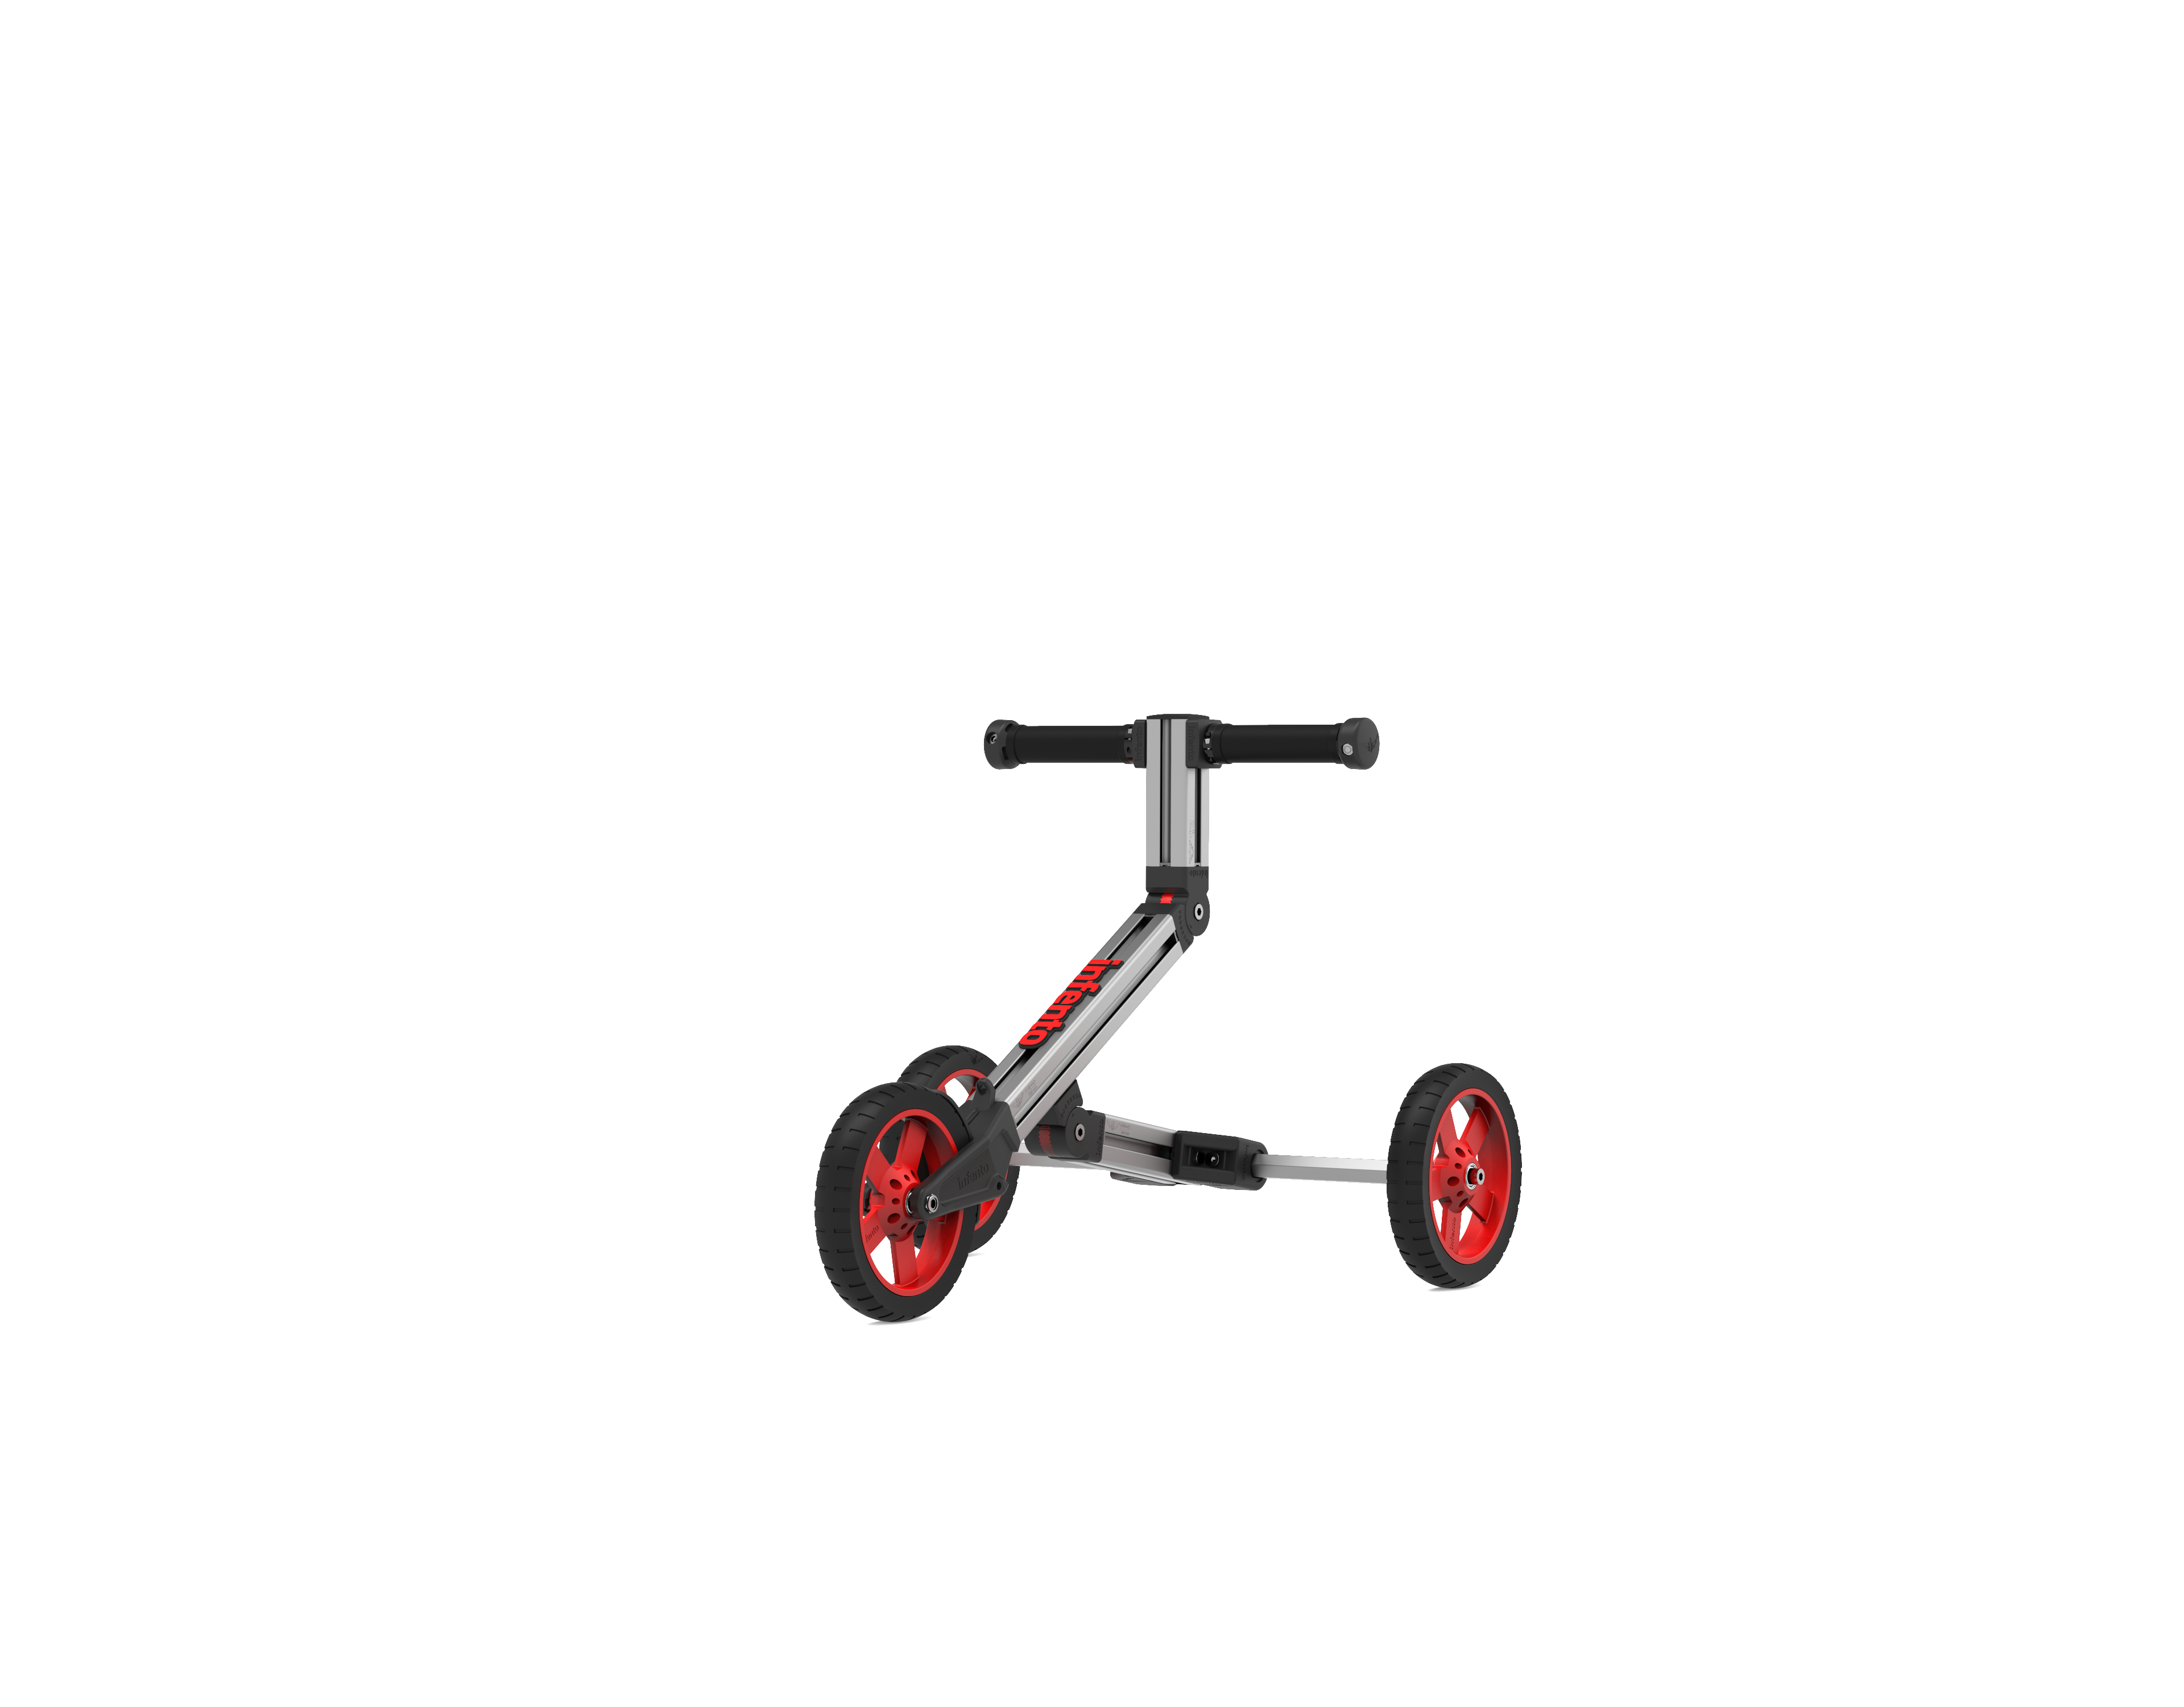 und einem - & Balance Kit Kinderfahrzeugbaukasten Roller, Fahrrad Laufrad Mehrfarbig Move INFENTO in Make